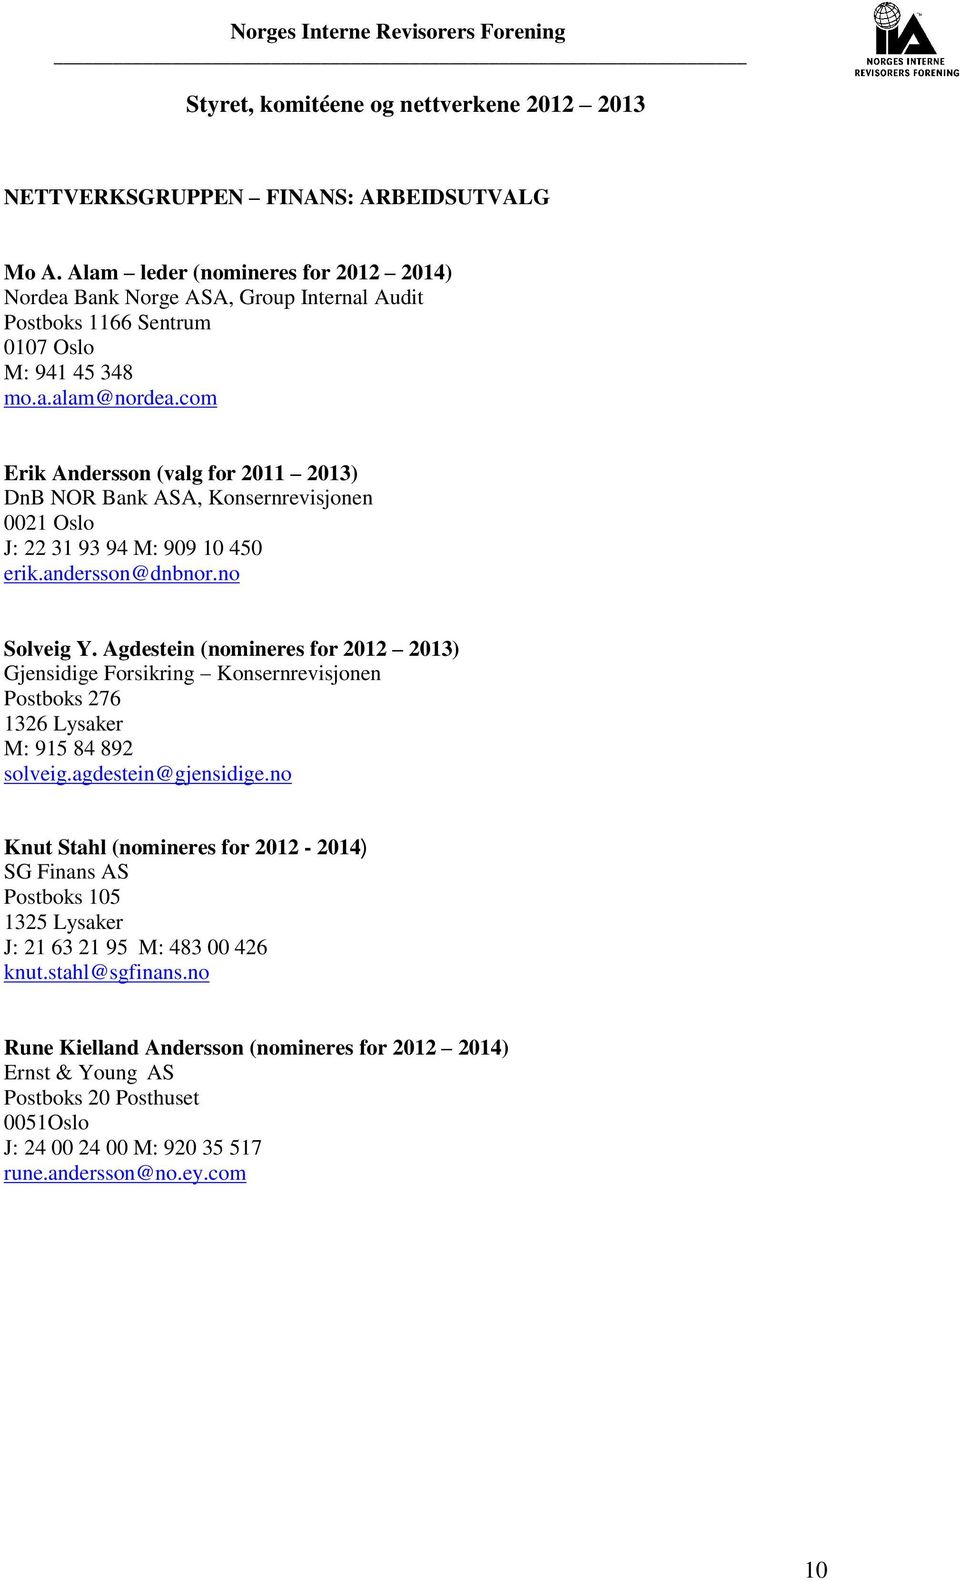 Agdestein (nomineres for 2012 2013) Gjensidige Forsikring Konsernrevisjonen Postboks 276 1326 Lysaker M: 915 84 892 solveig.agdestein@gjensidige.